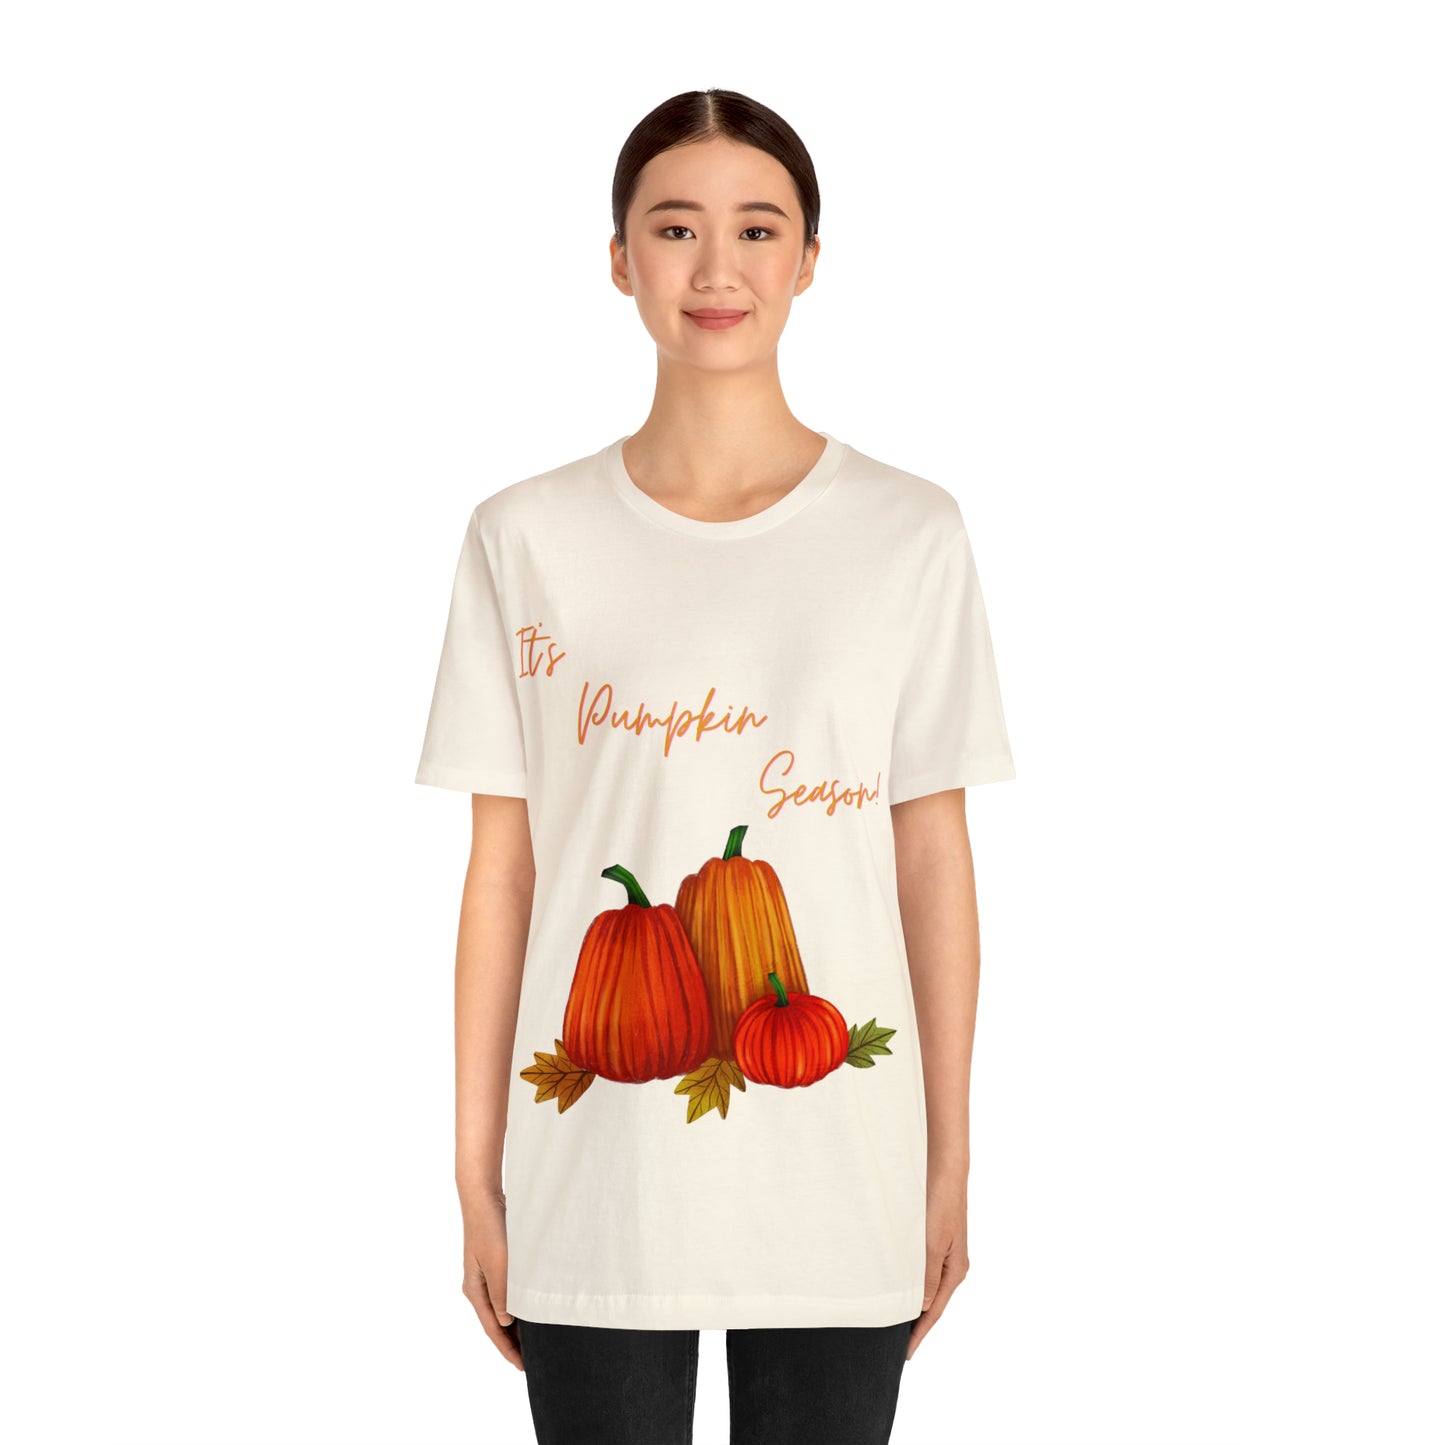 It’s Pumpkin Season! Unisex Jersey Short Sleeve Tee